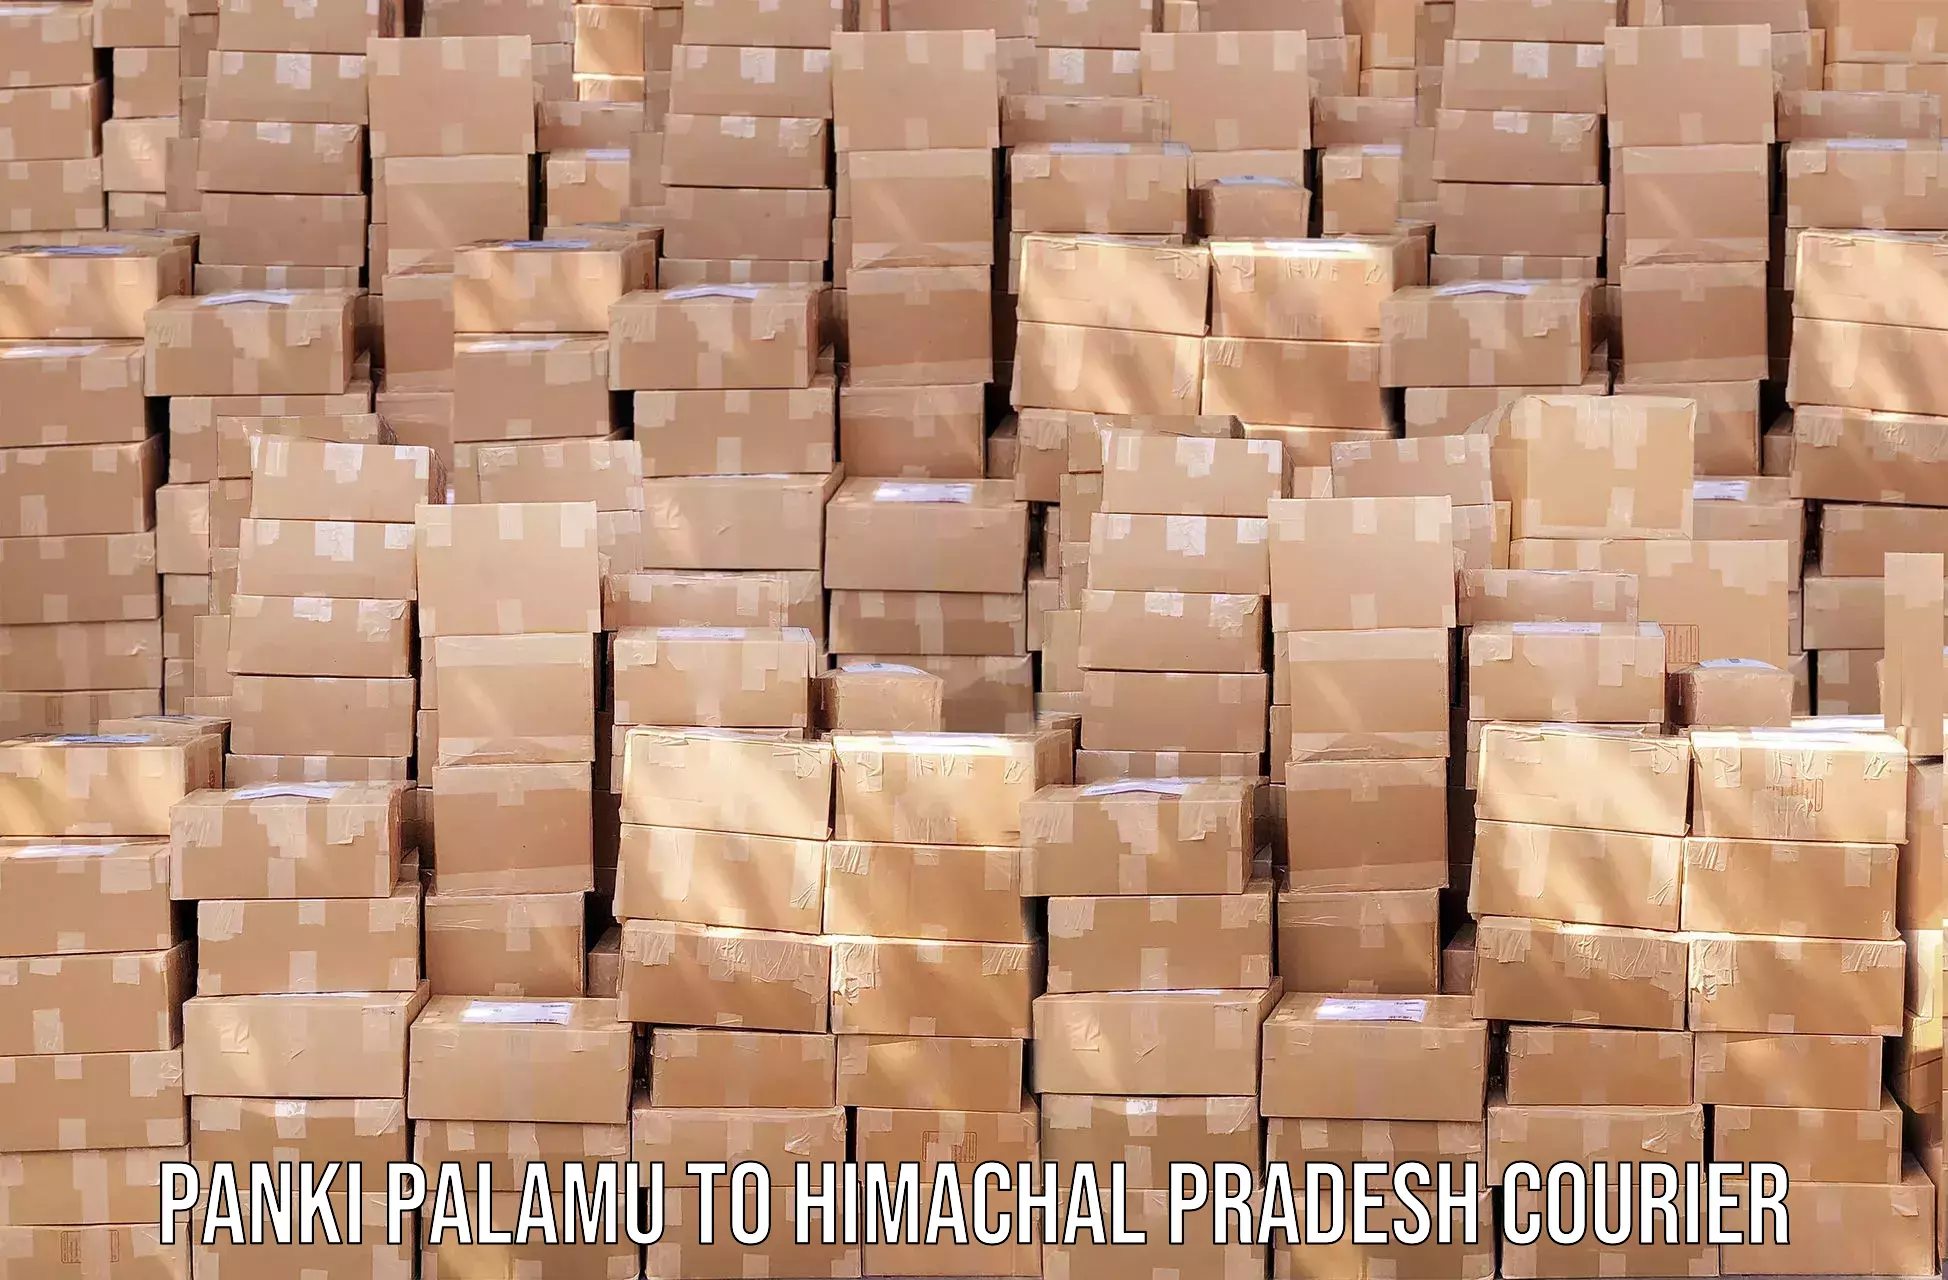 Global shipping networks in Panki Palamu to Himachal Pradesh